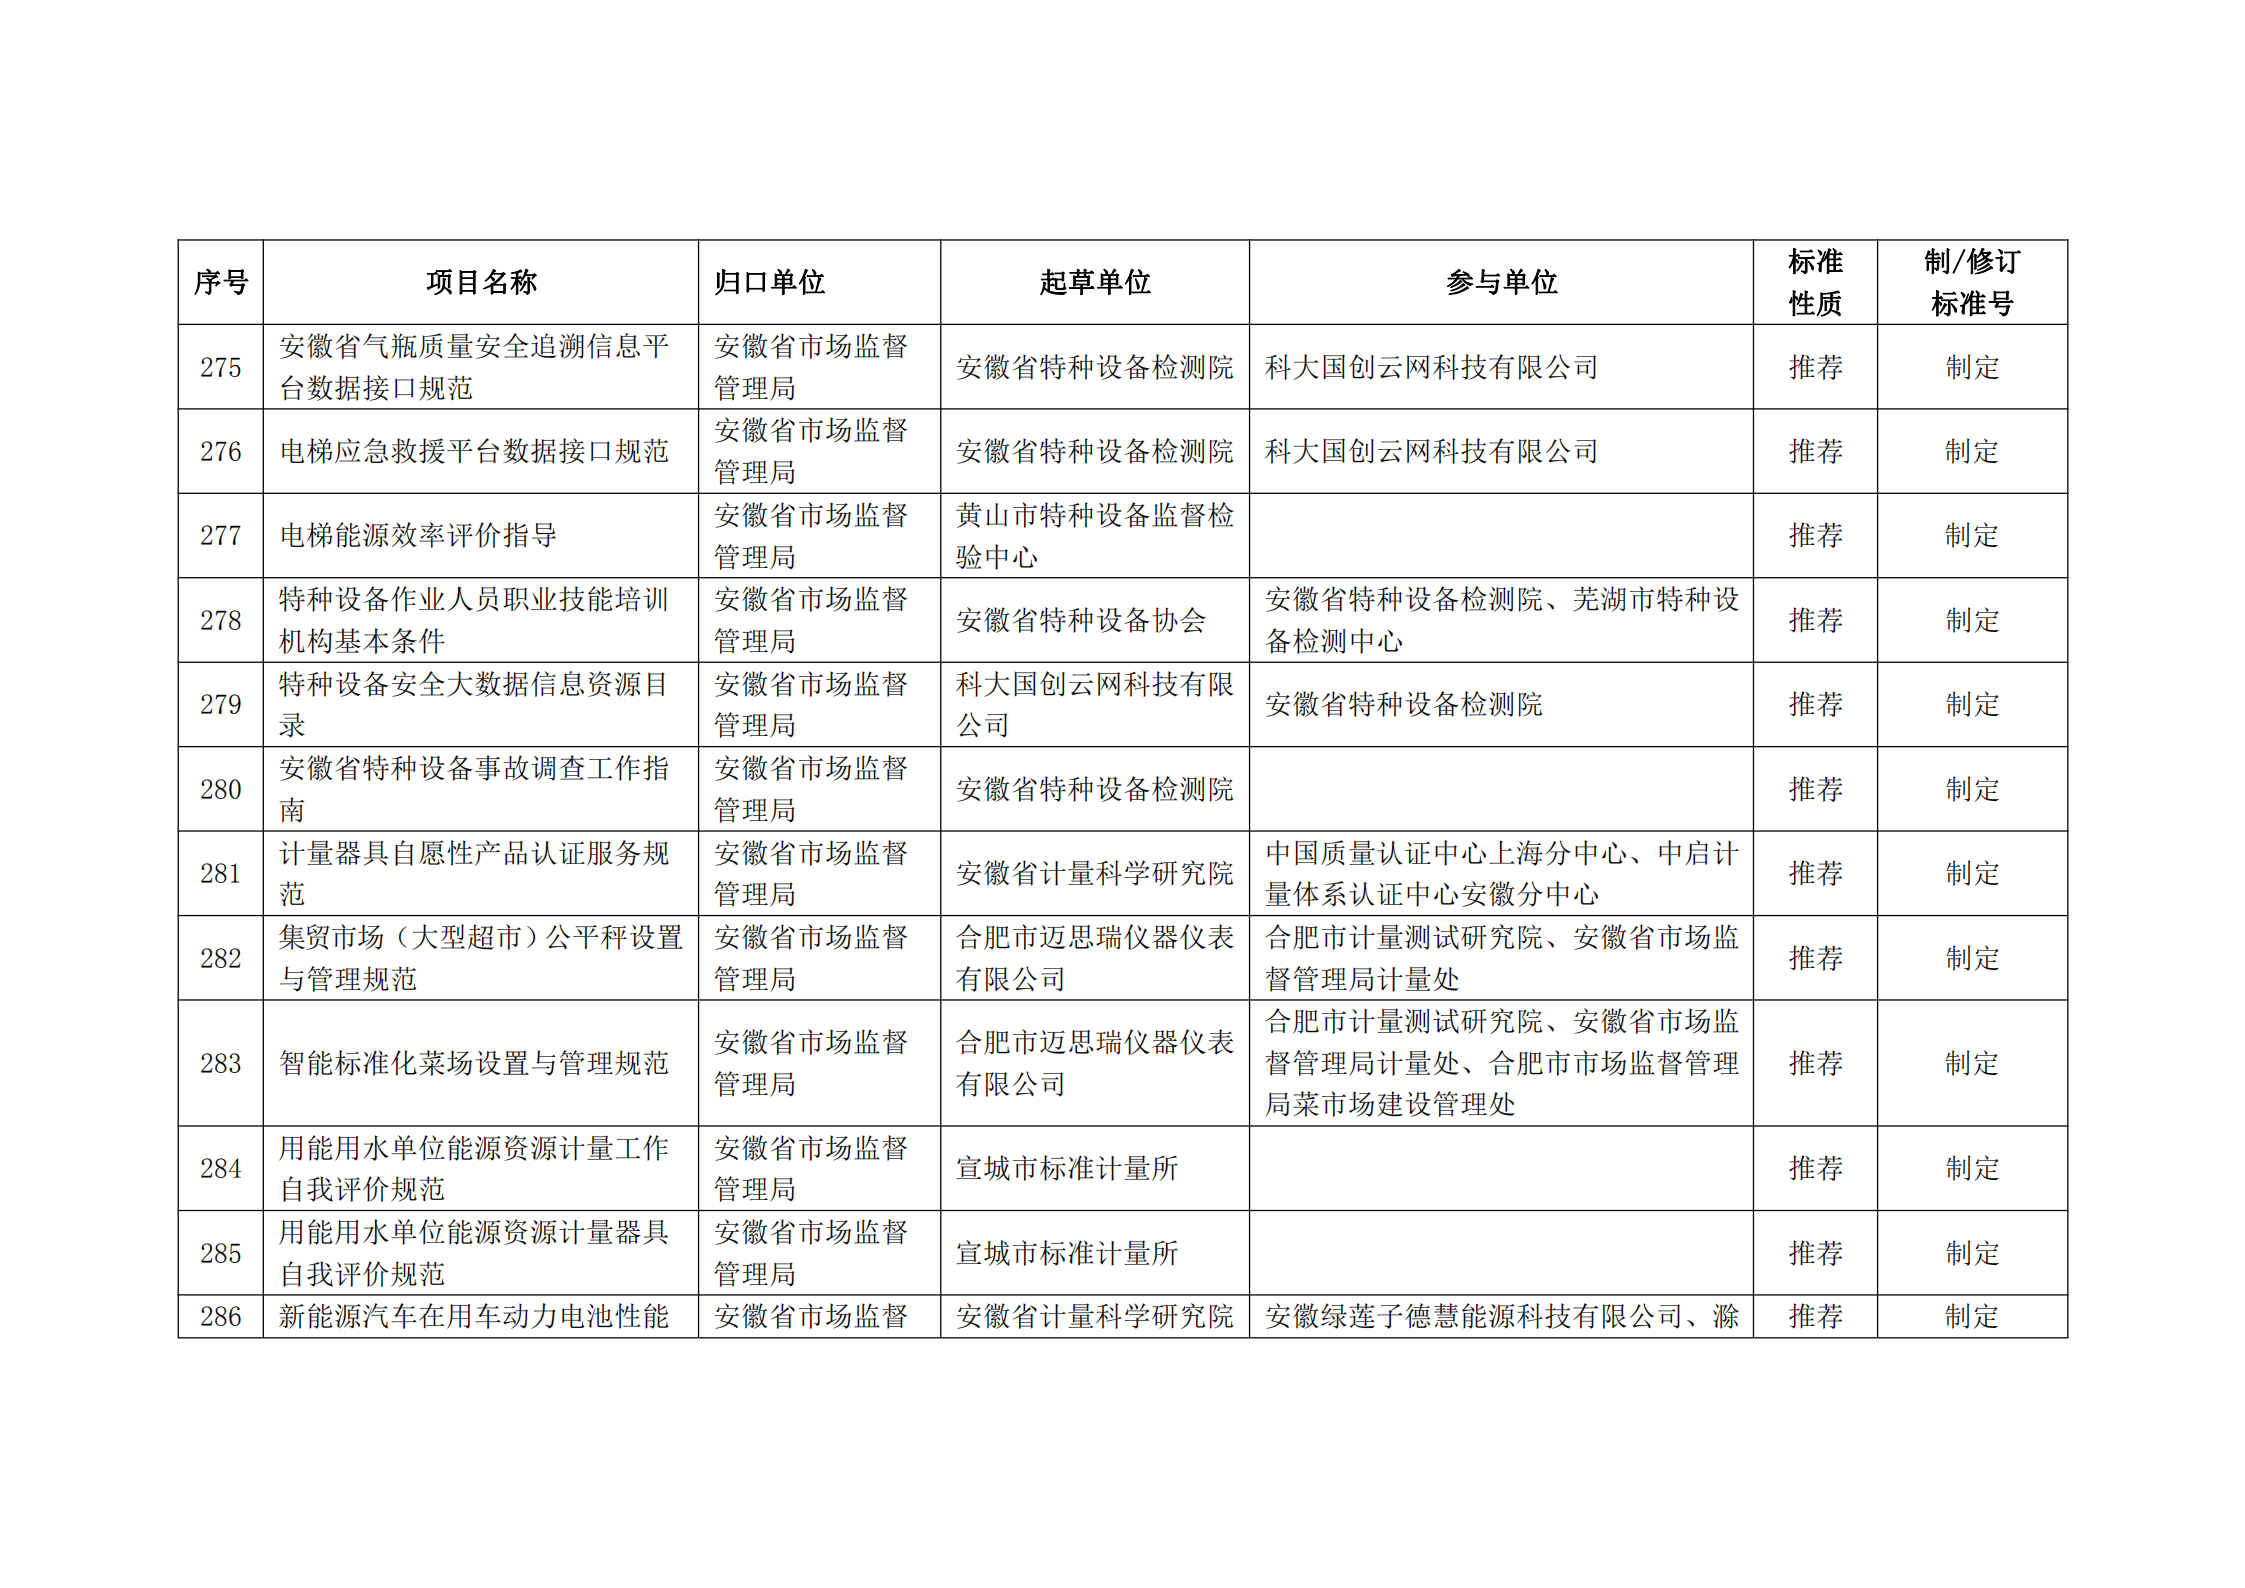 2020 年第二批安徽省地方标准制、修订计划项目汇总表(图31)